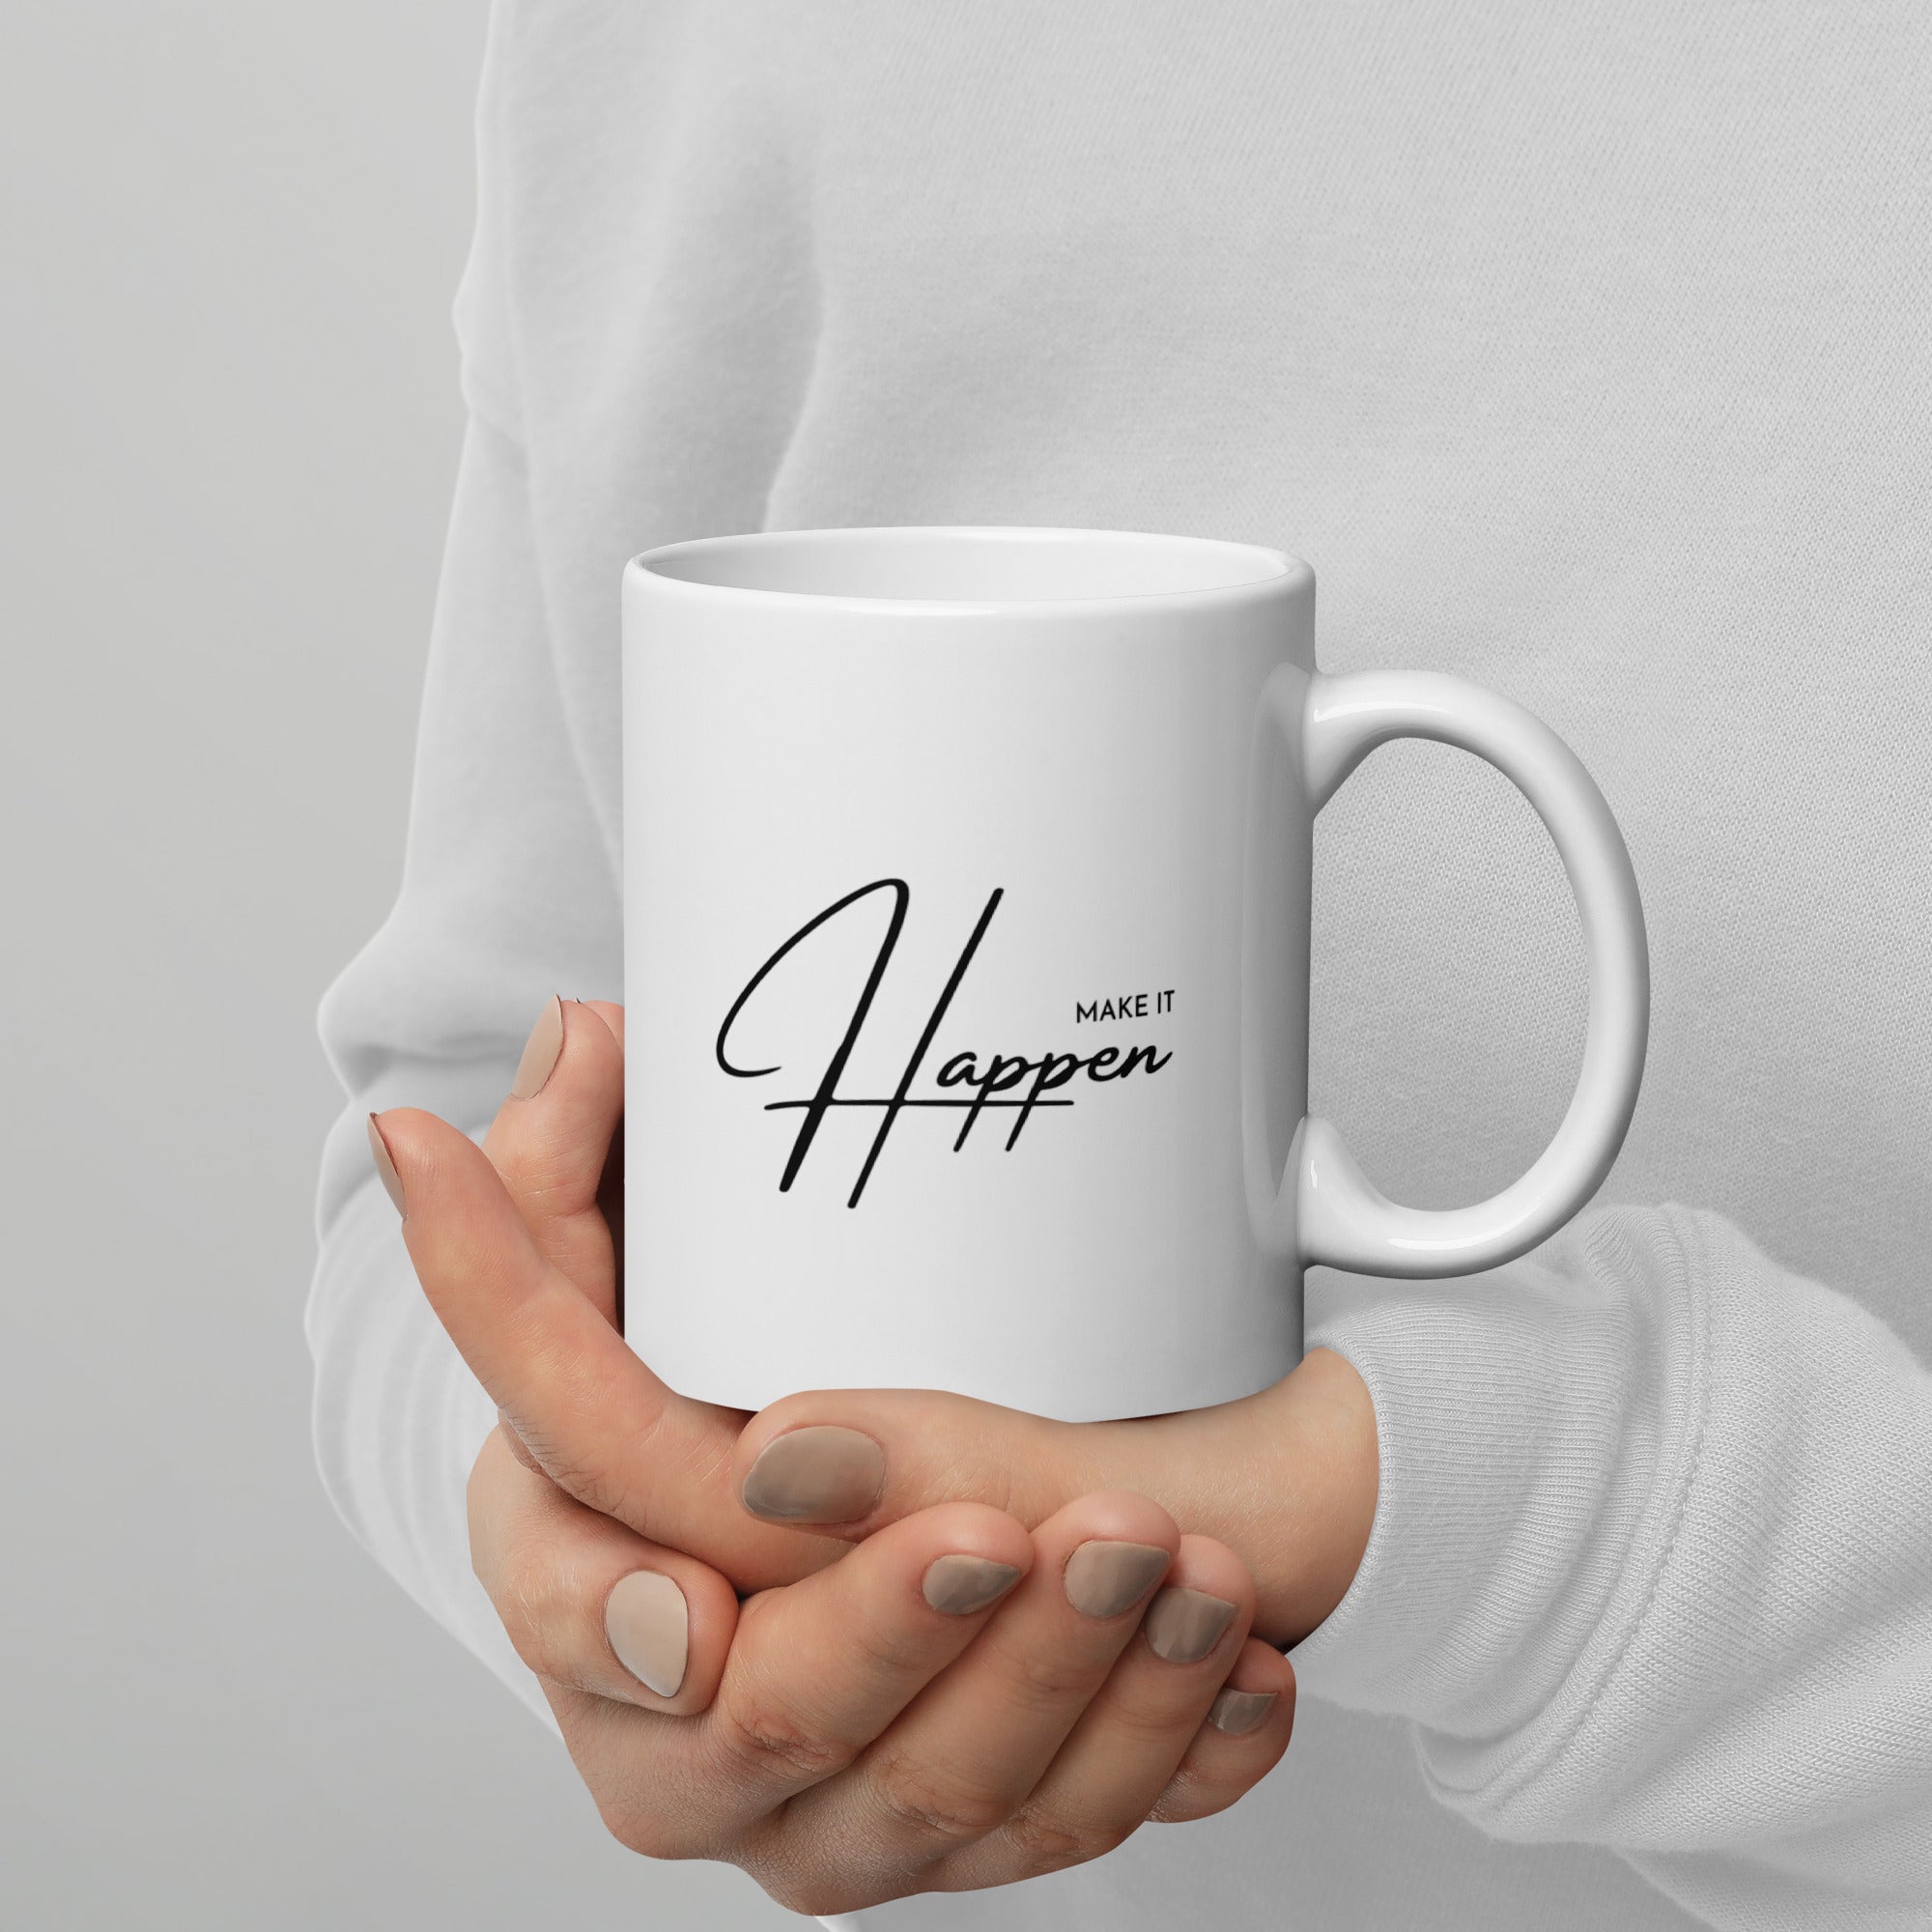 Make It Happen 2 - Coffee Mug